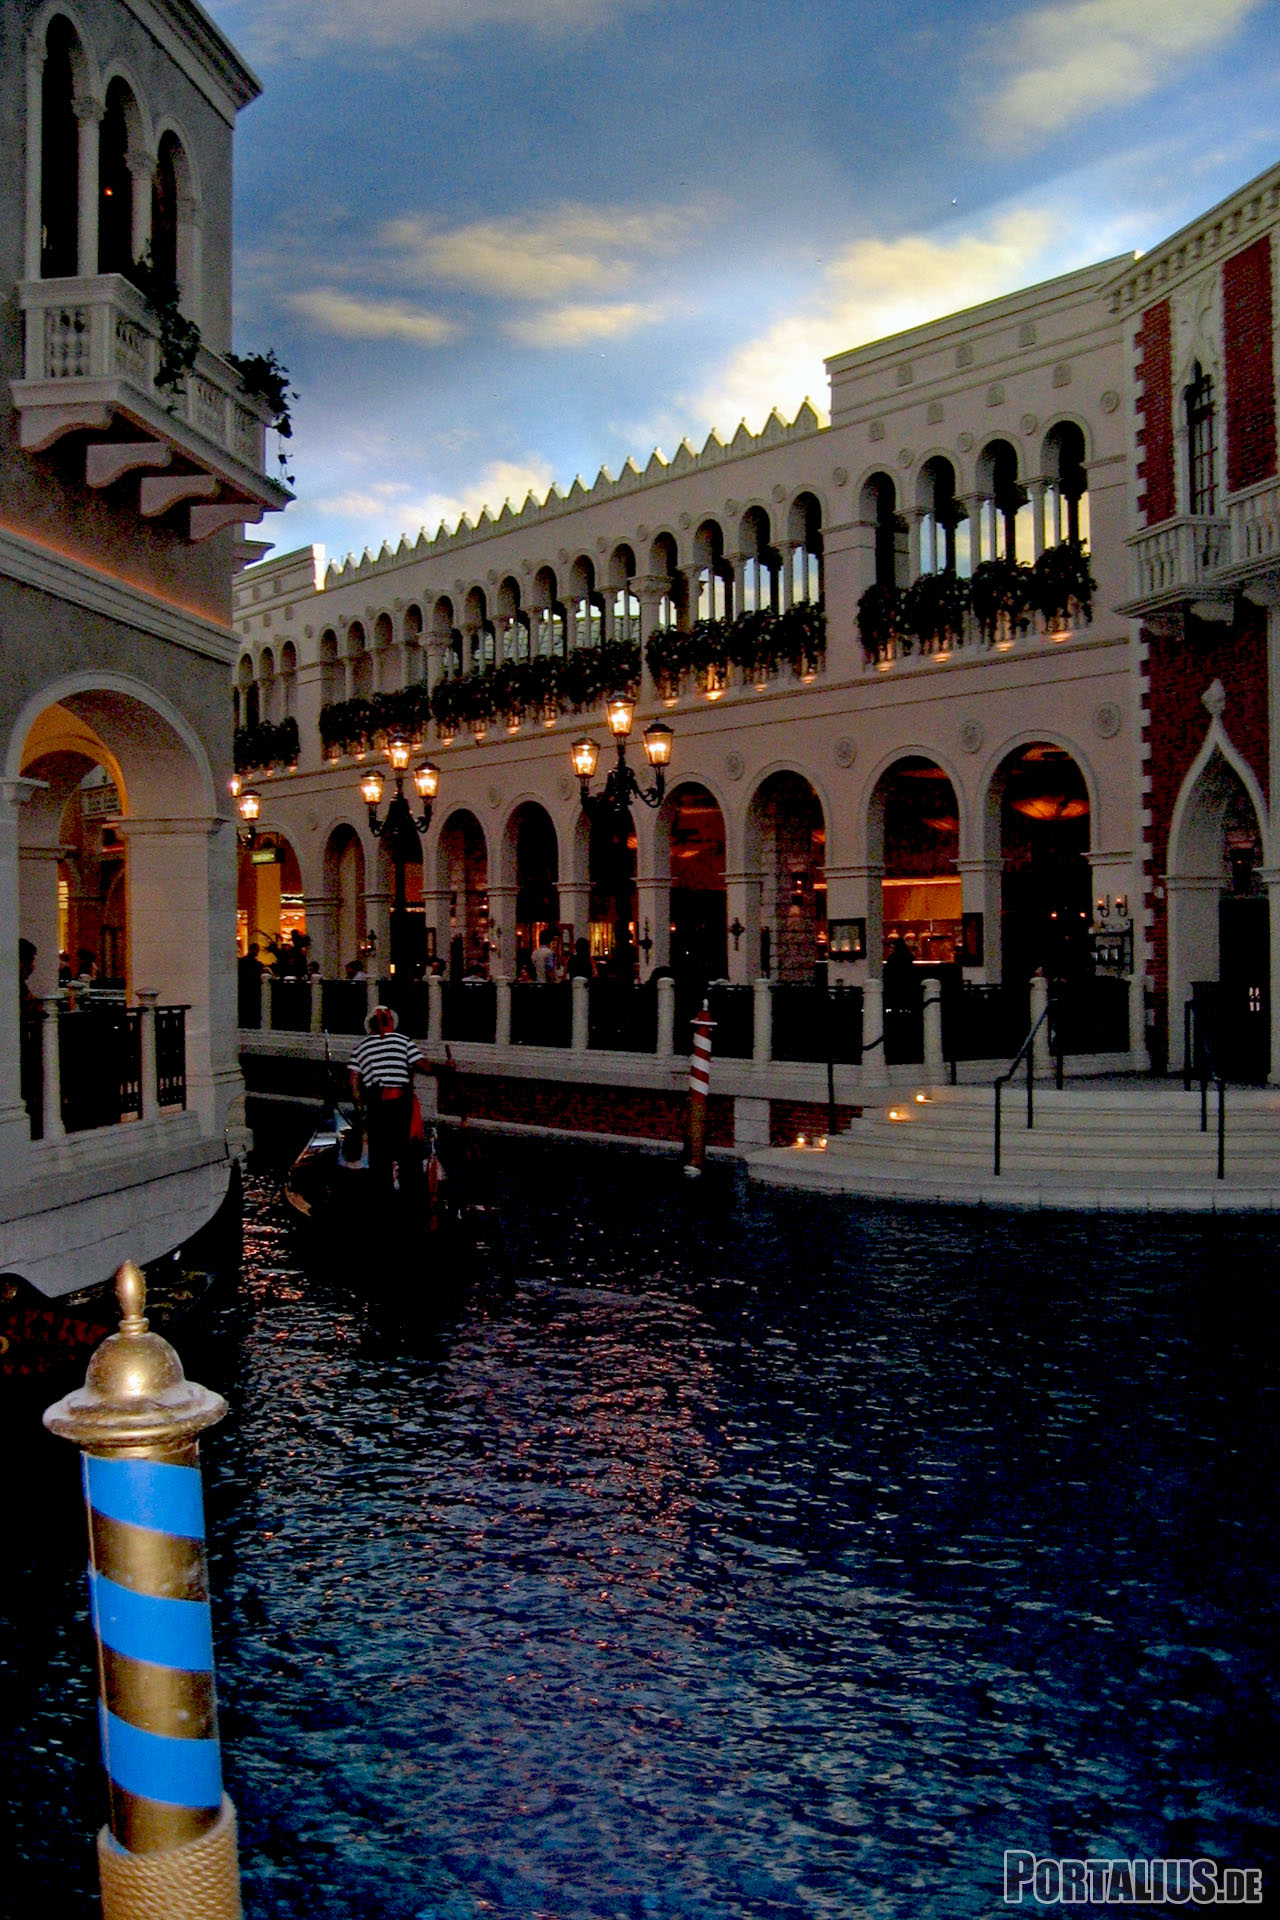 Las_Vegas_-_Venetian_Inside_3